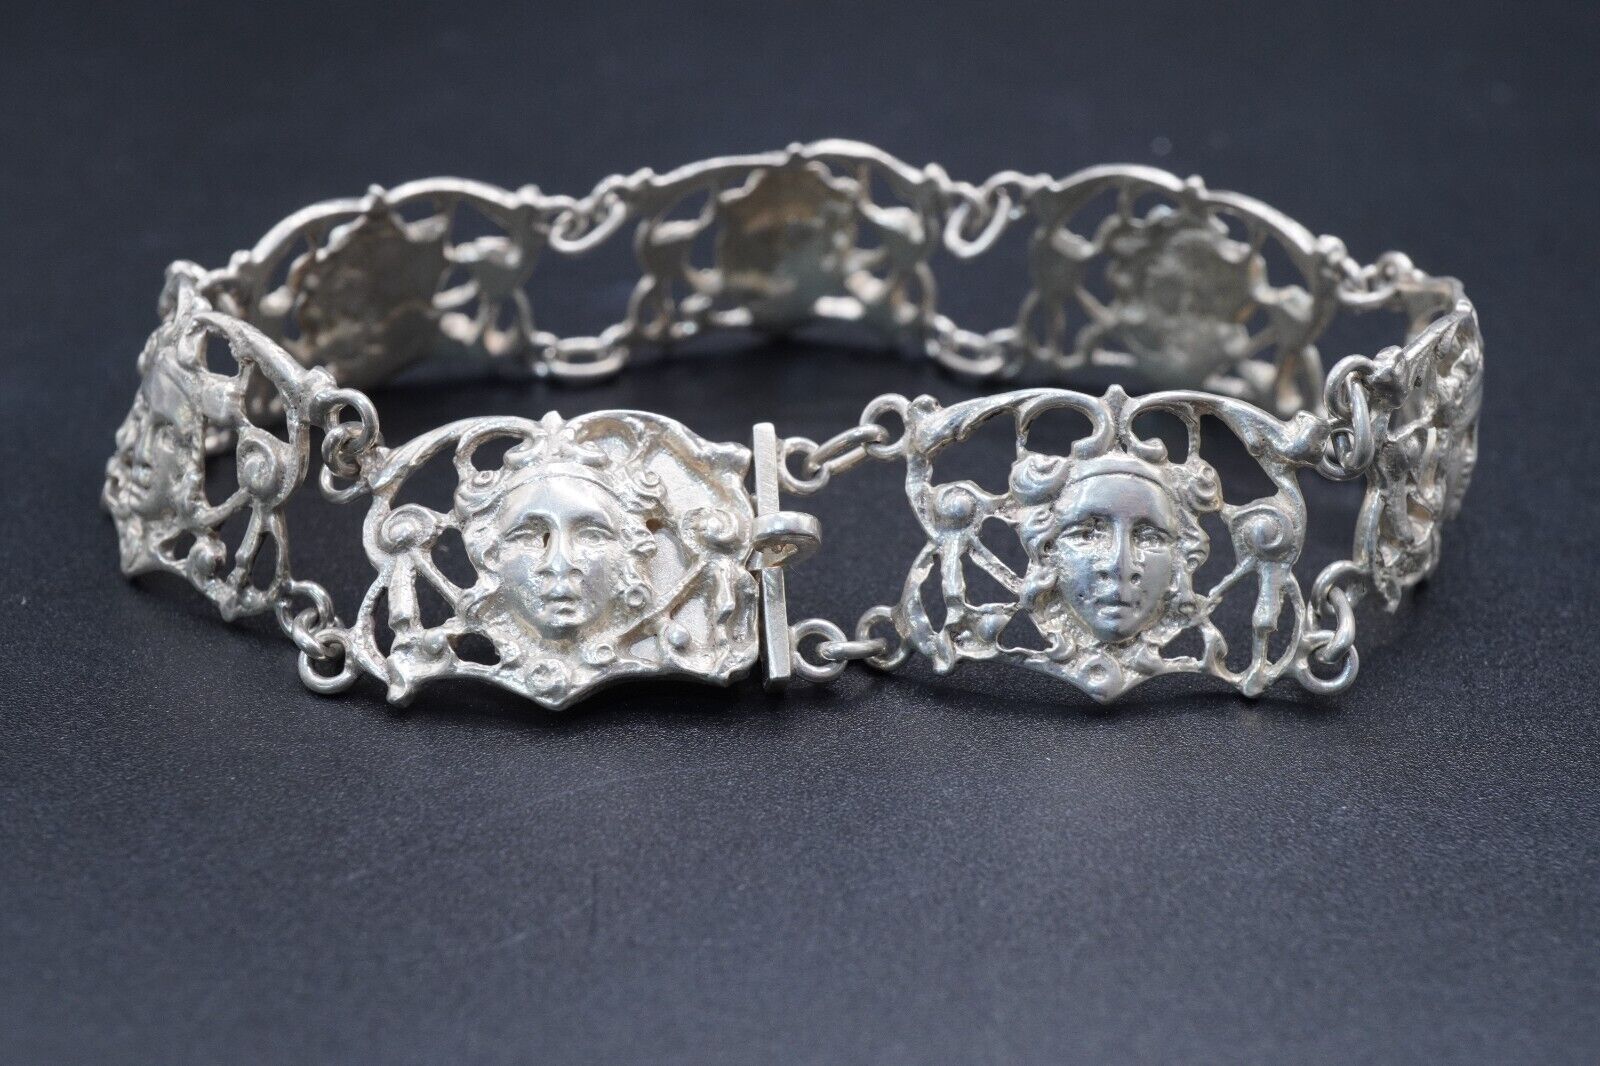 Vintage 800 silver bracelet. Hand made - image 1